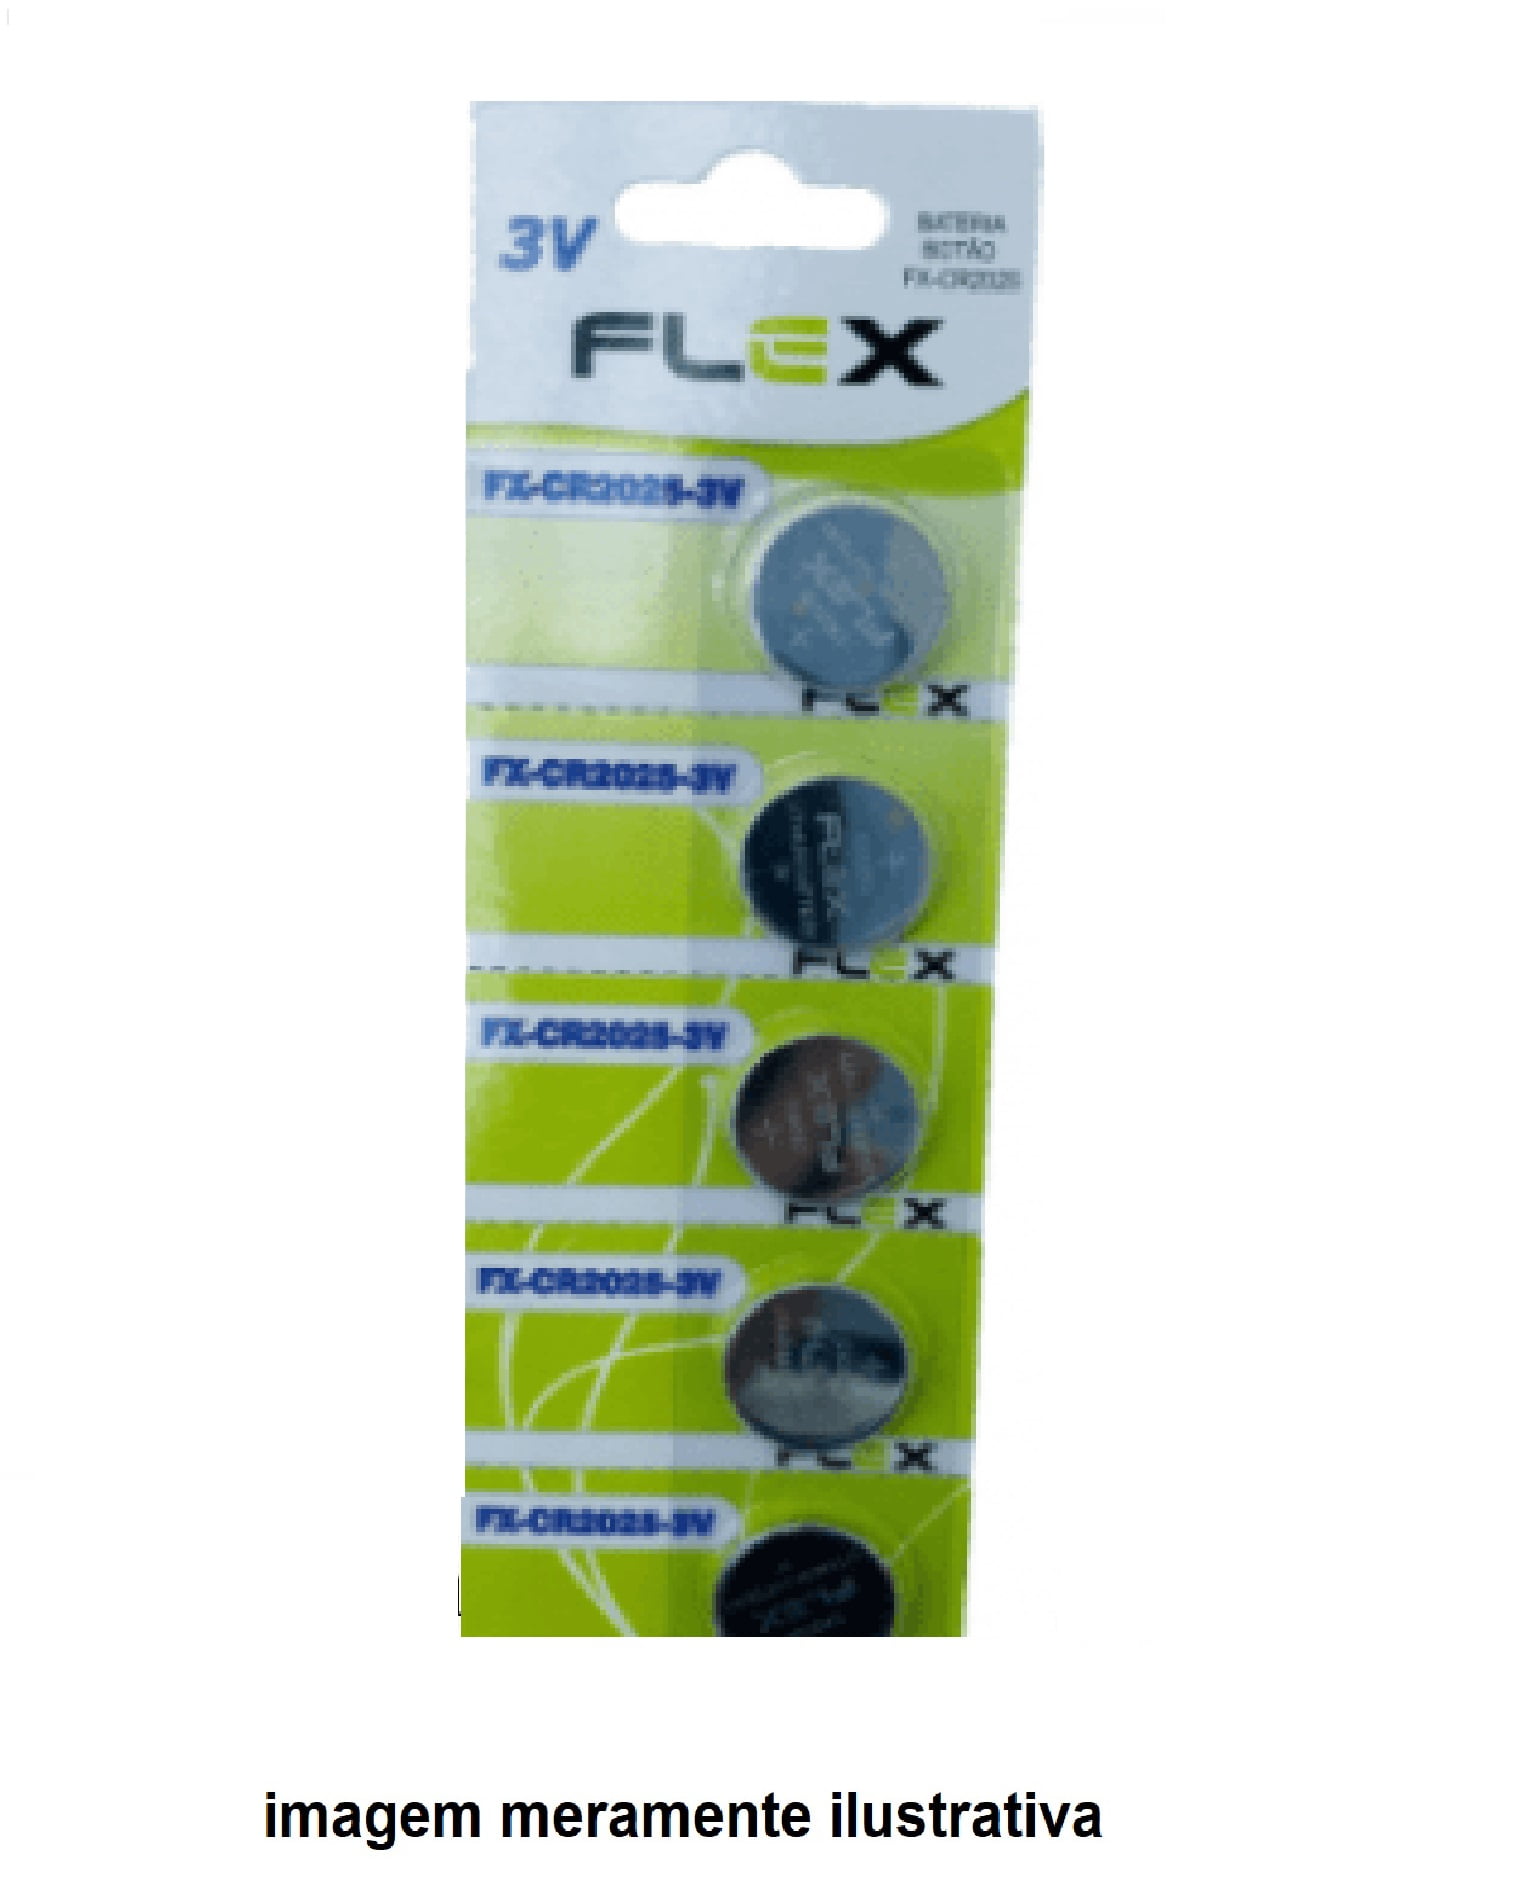 5 UNIDADES Bateria botão Flex CR 2025 3v Lithium Cartela C/ 5 Unid Pilha